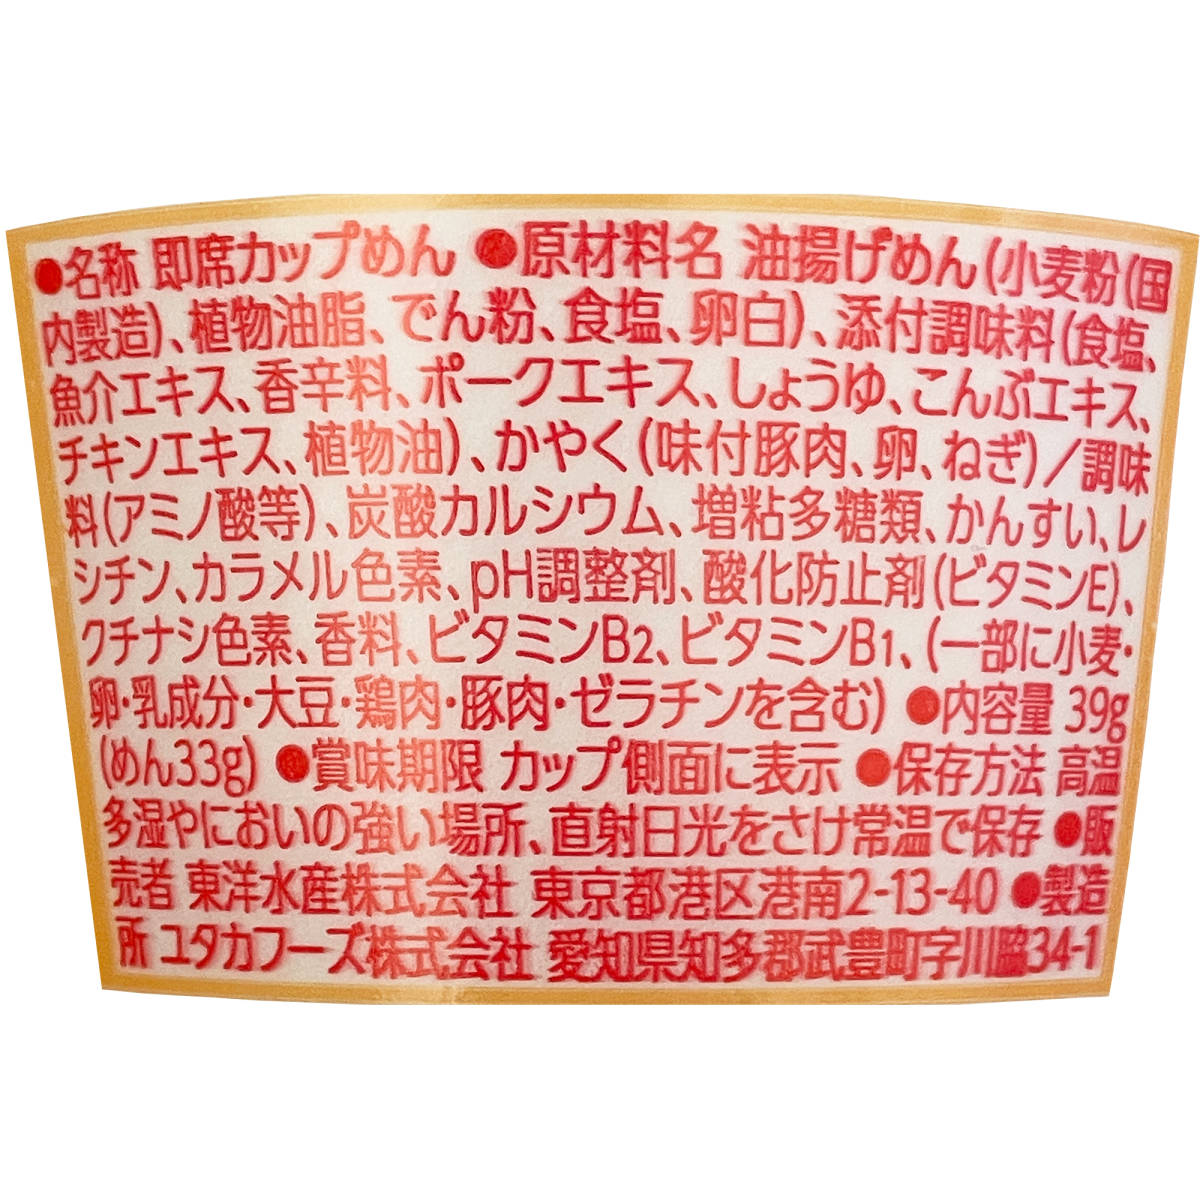  Okinawa ограничение maru Chan [ бобы cup ] Okinawa соба 39g 1 кейс мгновенный cup лапша . земля производство ваш заказ 